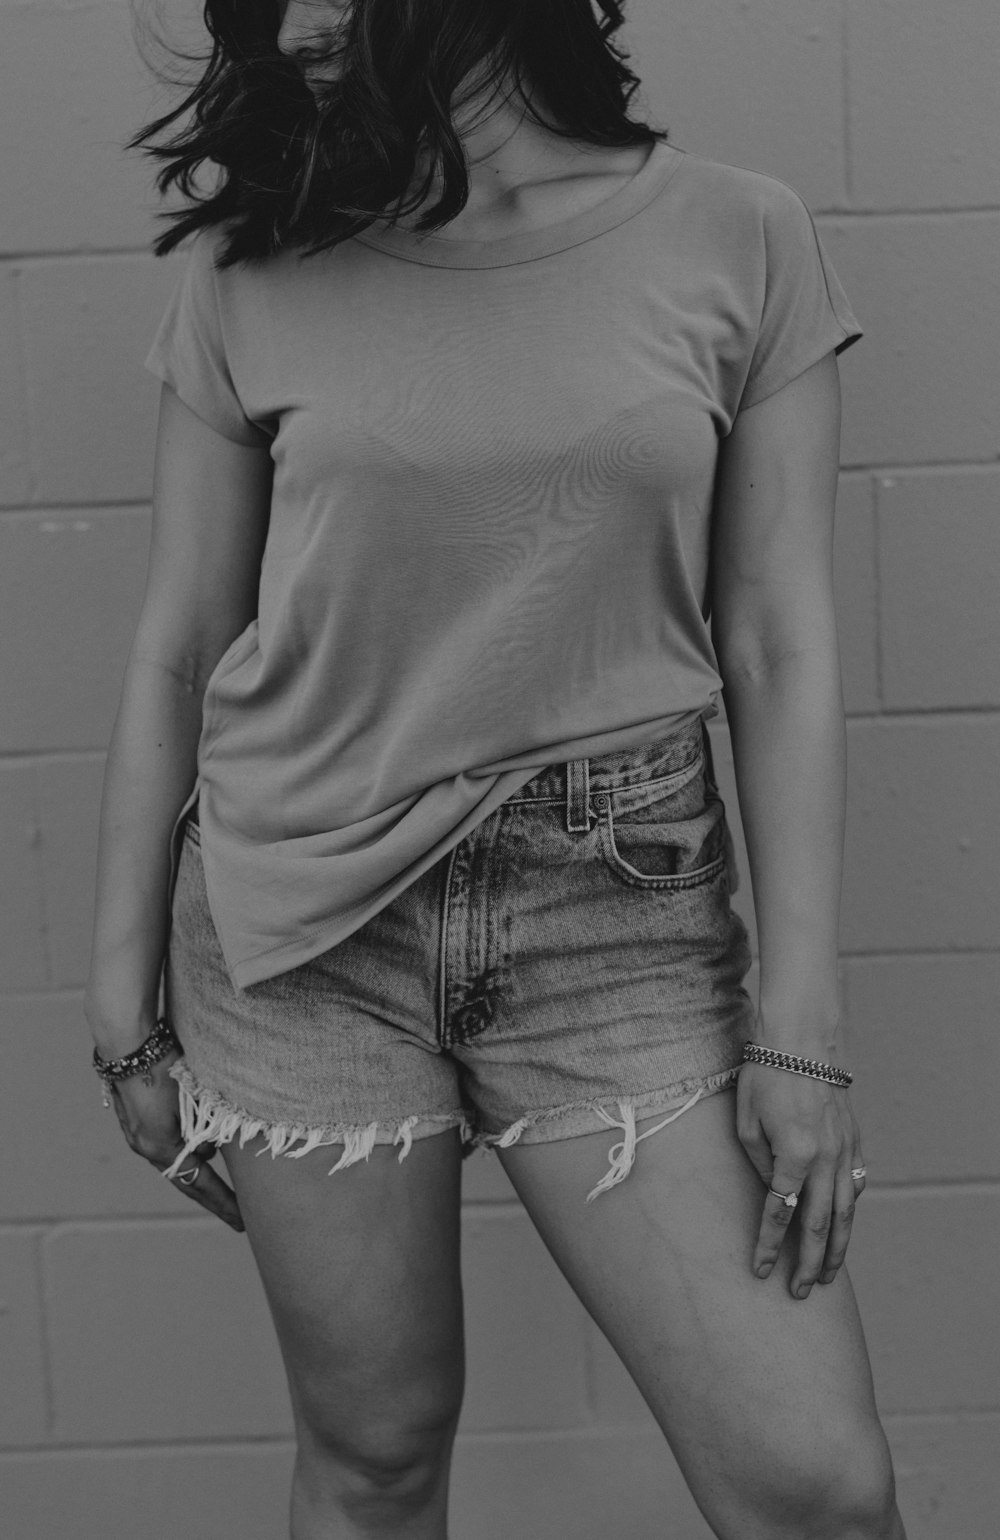 fotografia em tons de cinza da mulher vestindo camiseta e shorts jeans